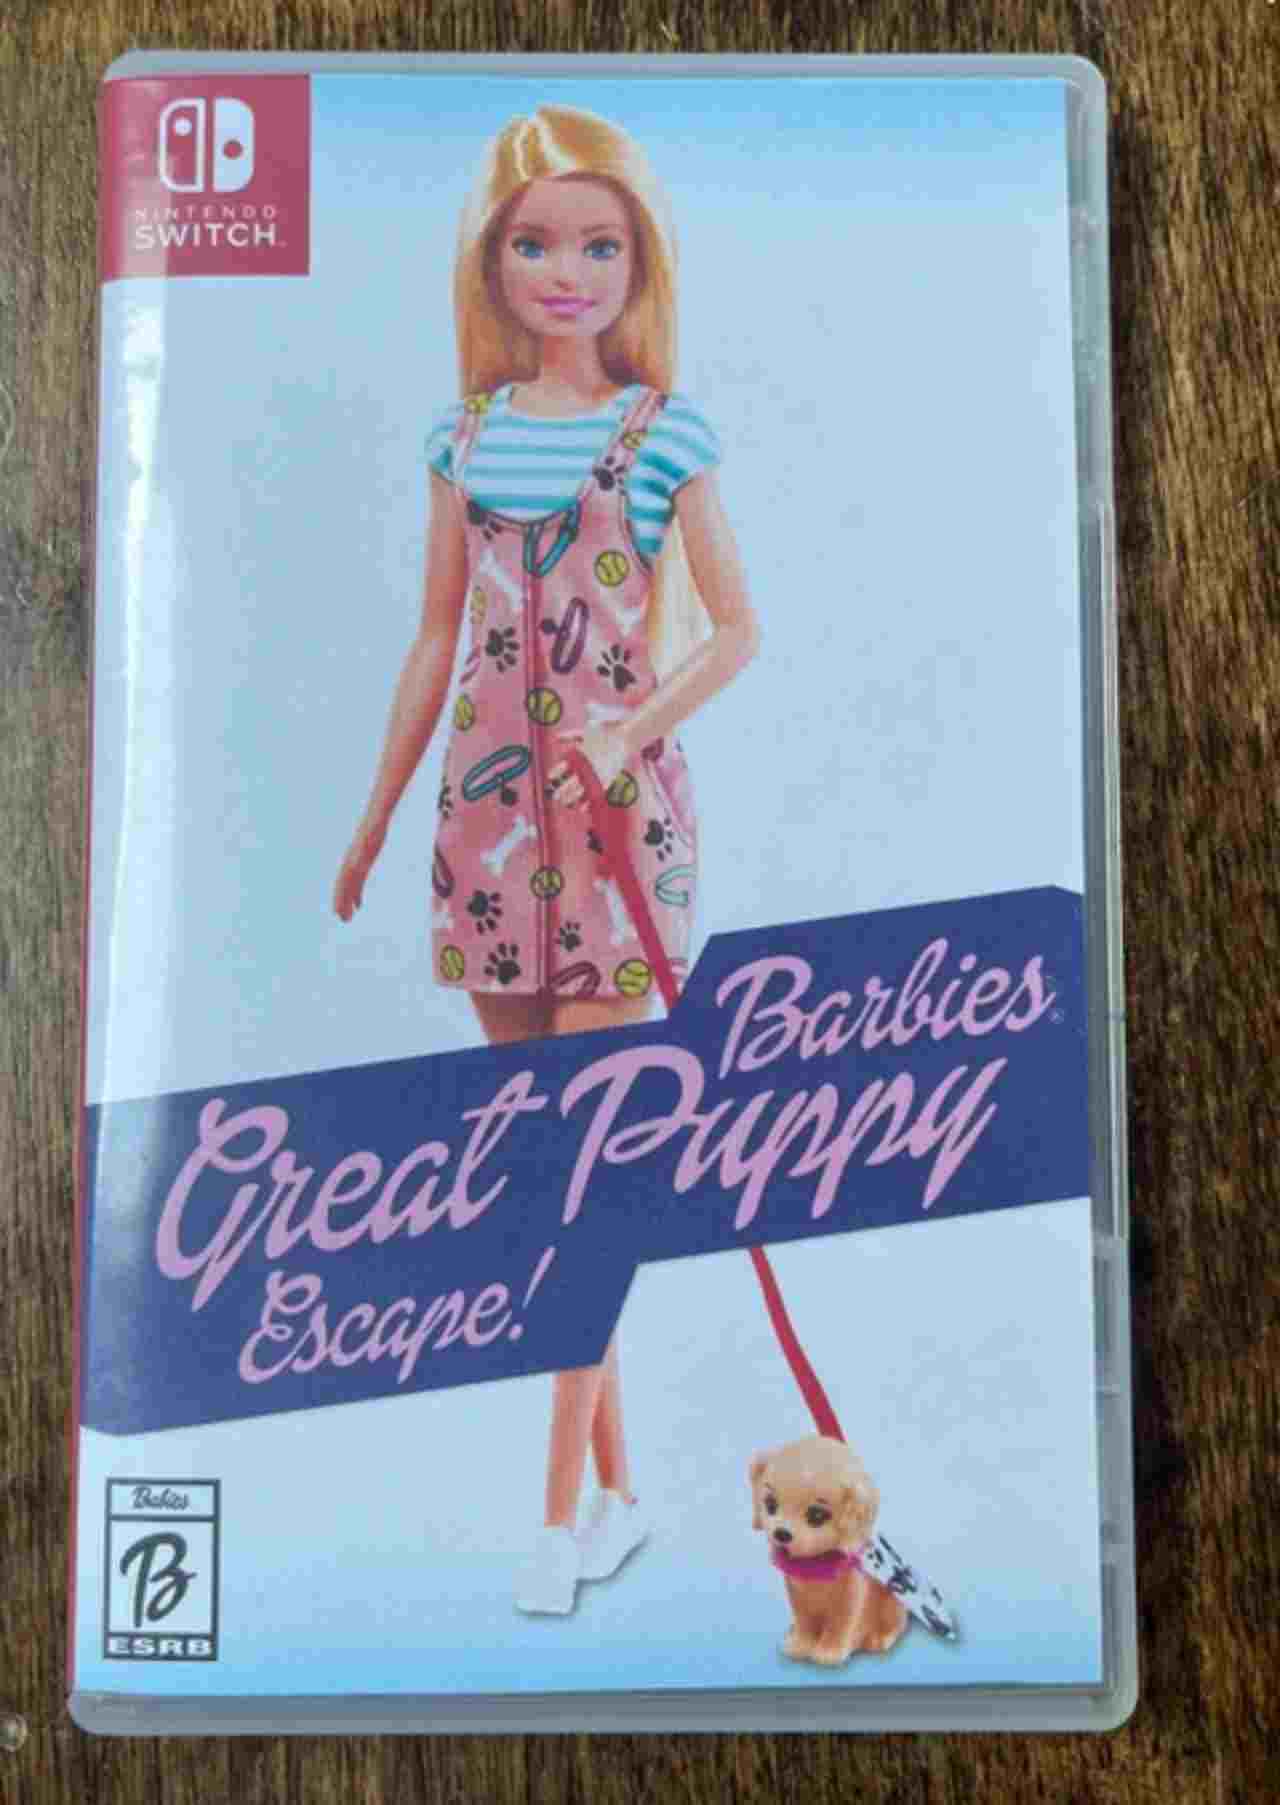 Zio regala al nipote videogioco di Barbie, lo scherzo è epico - FOTO